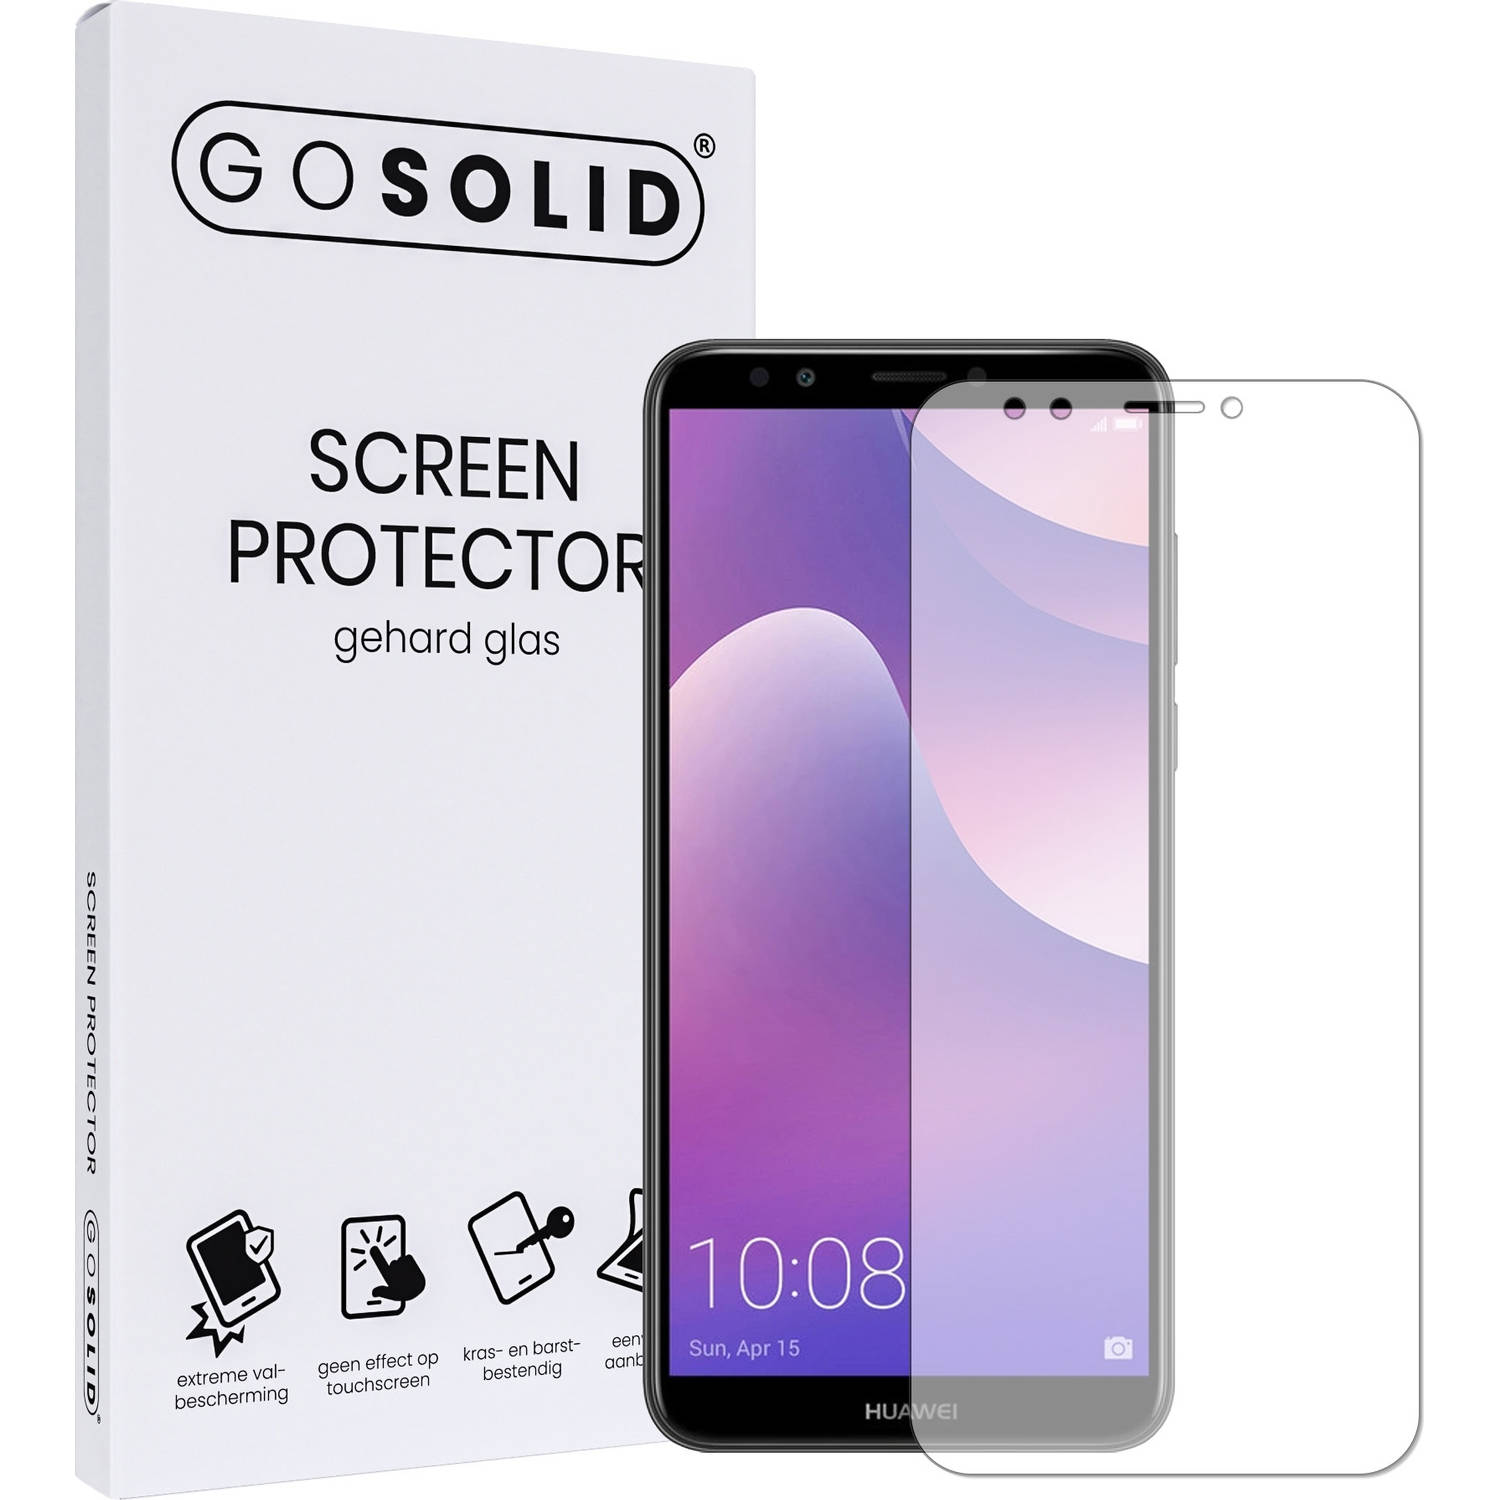 GO SOLID! Huawei Y7 (2018) screenprotector gehard glas